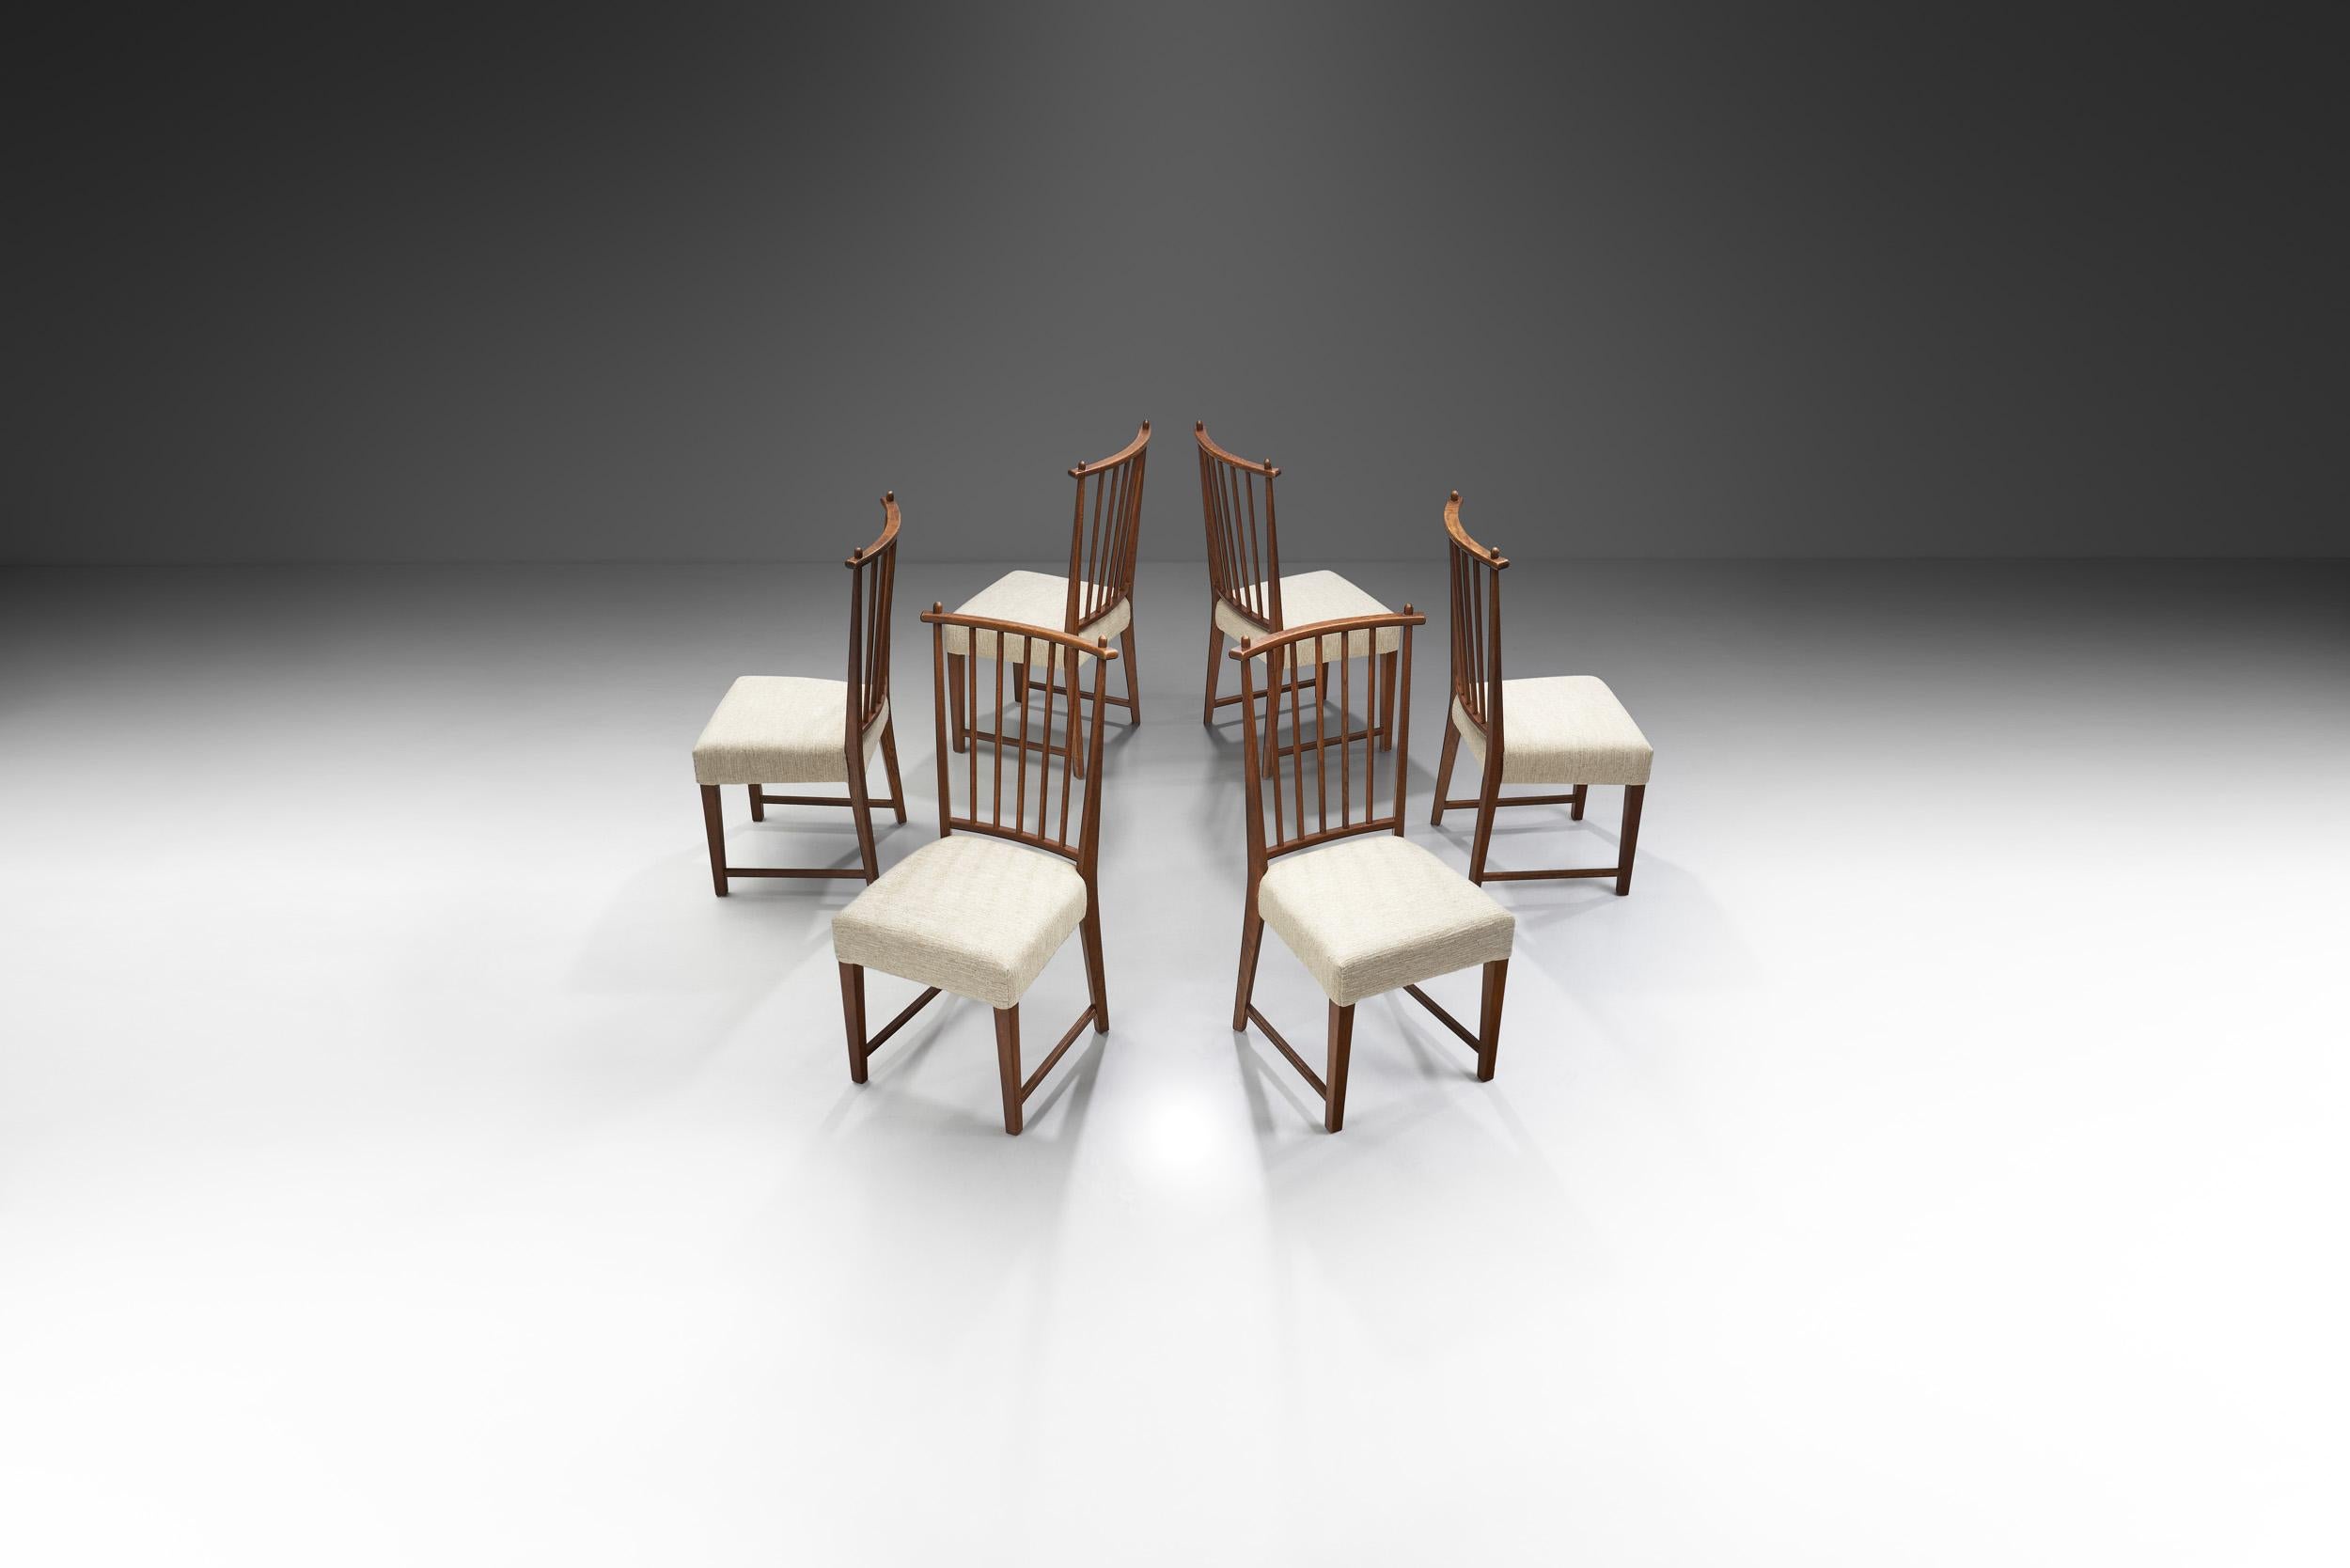 Ces rares chaises de salle à manger du designer néerlandais Bas van Pelt témoignent de l'époque moins connue, mais brillante, du premier modernisme néerlandais. Les dessins de Van Pelt n'étaient produits que lorsqu'une commande était passée, c'est